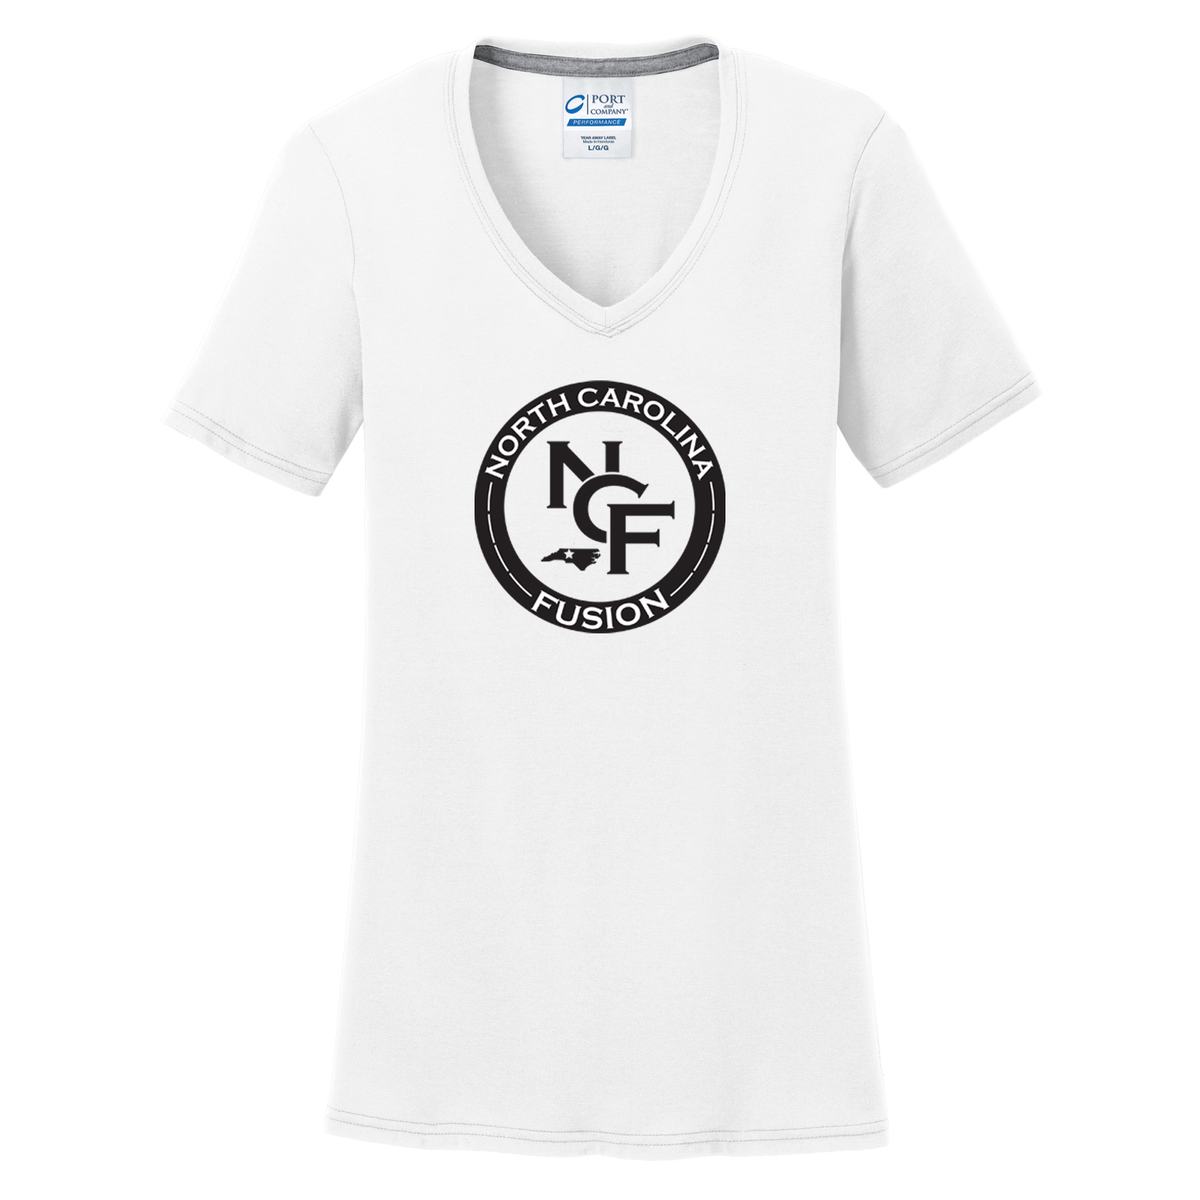 Fusion Lacrosse Women's T-Shirt